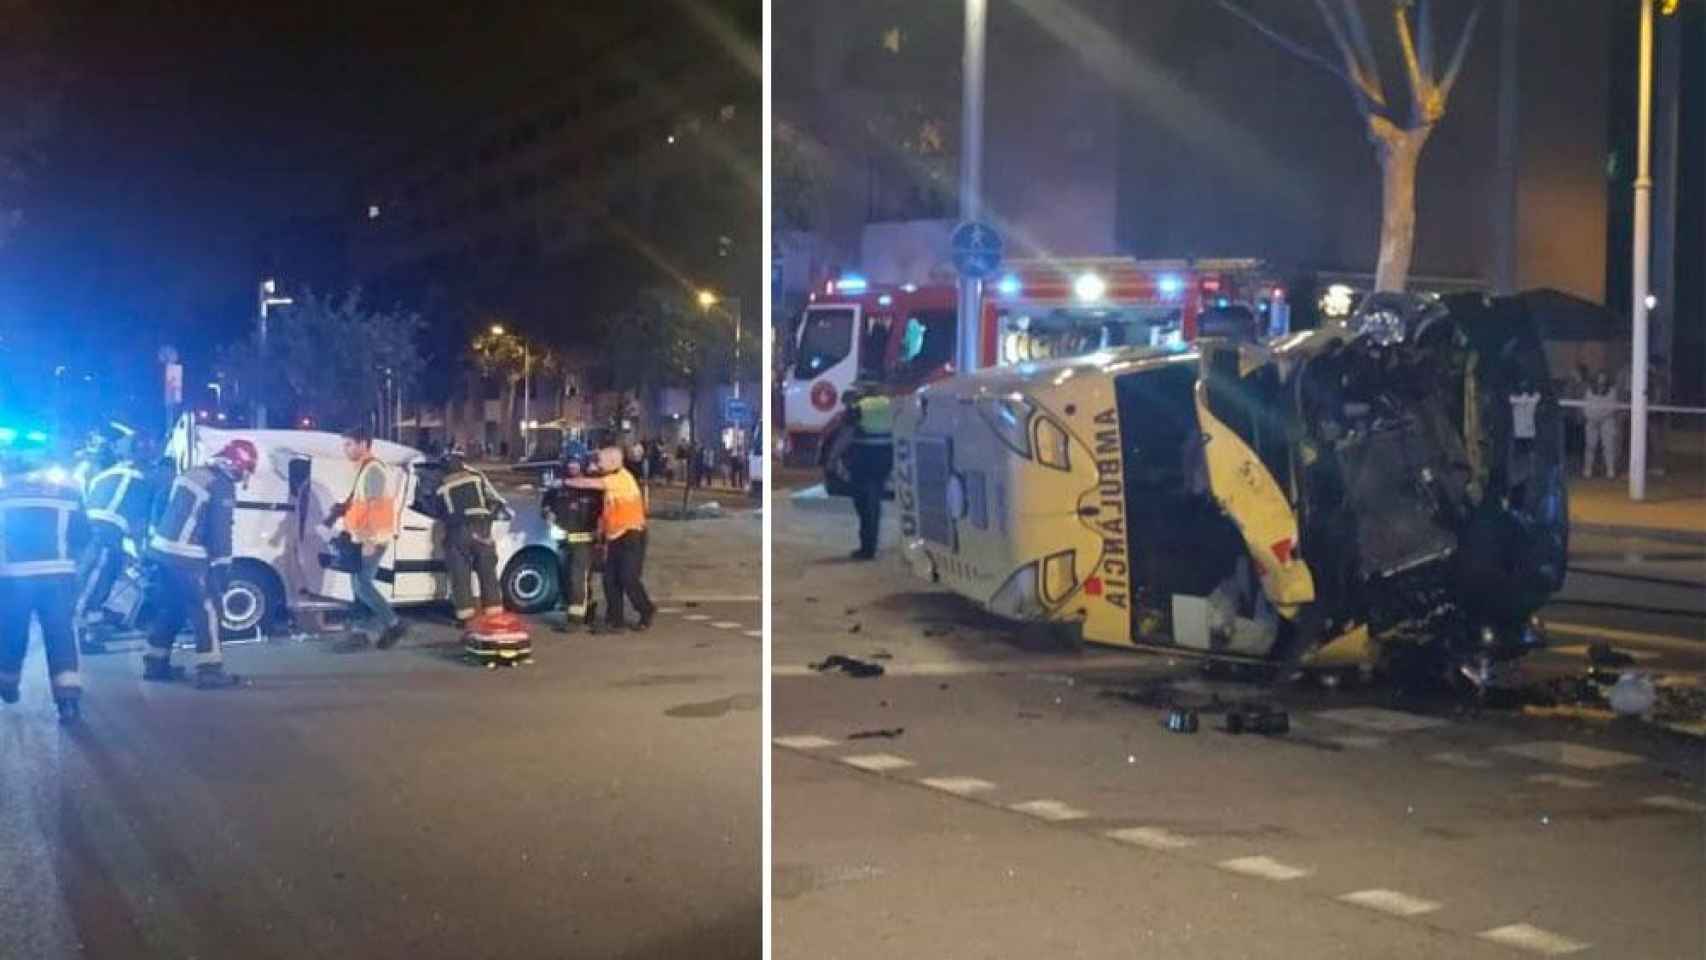 Imagen del accidente de ambulancia que provocó la el despido del trabajador en prácticas el mismo día / CG